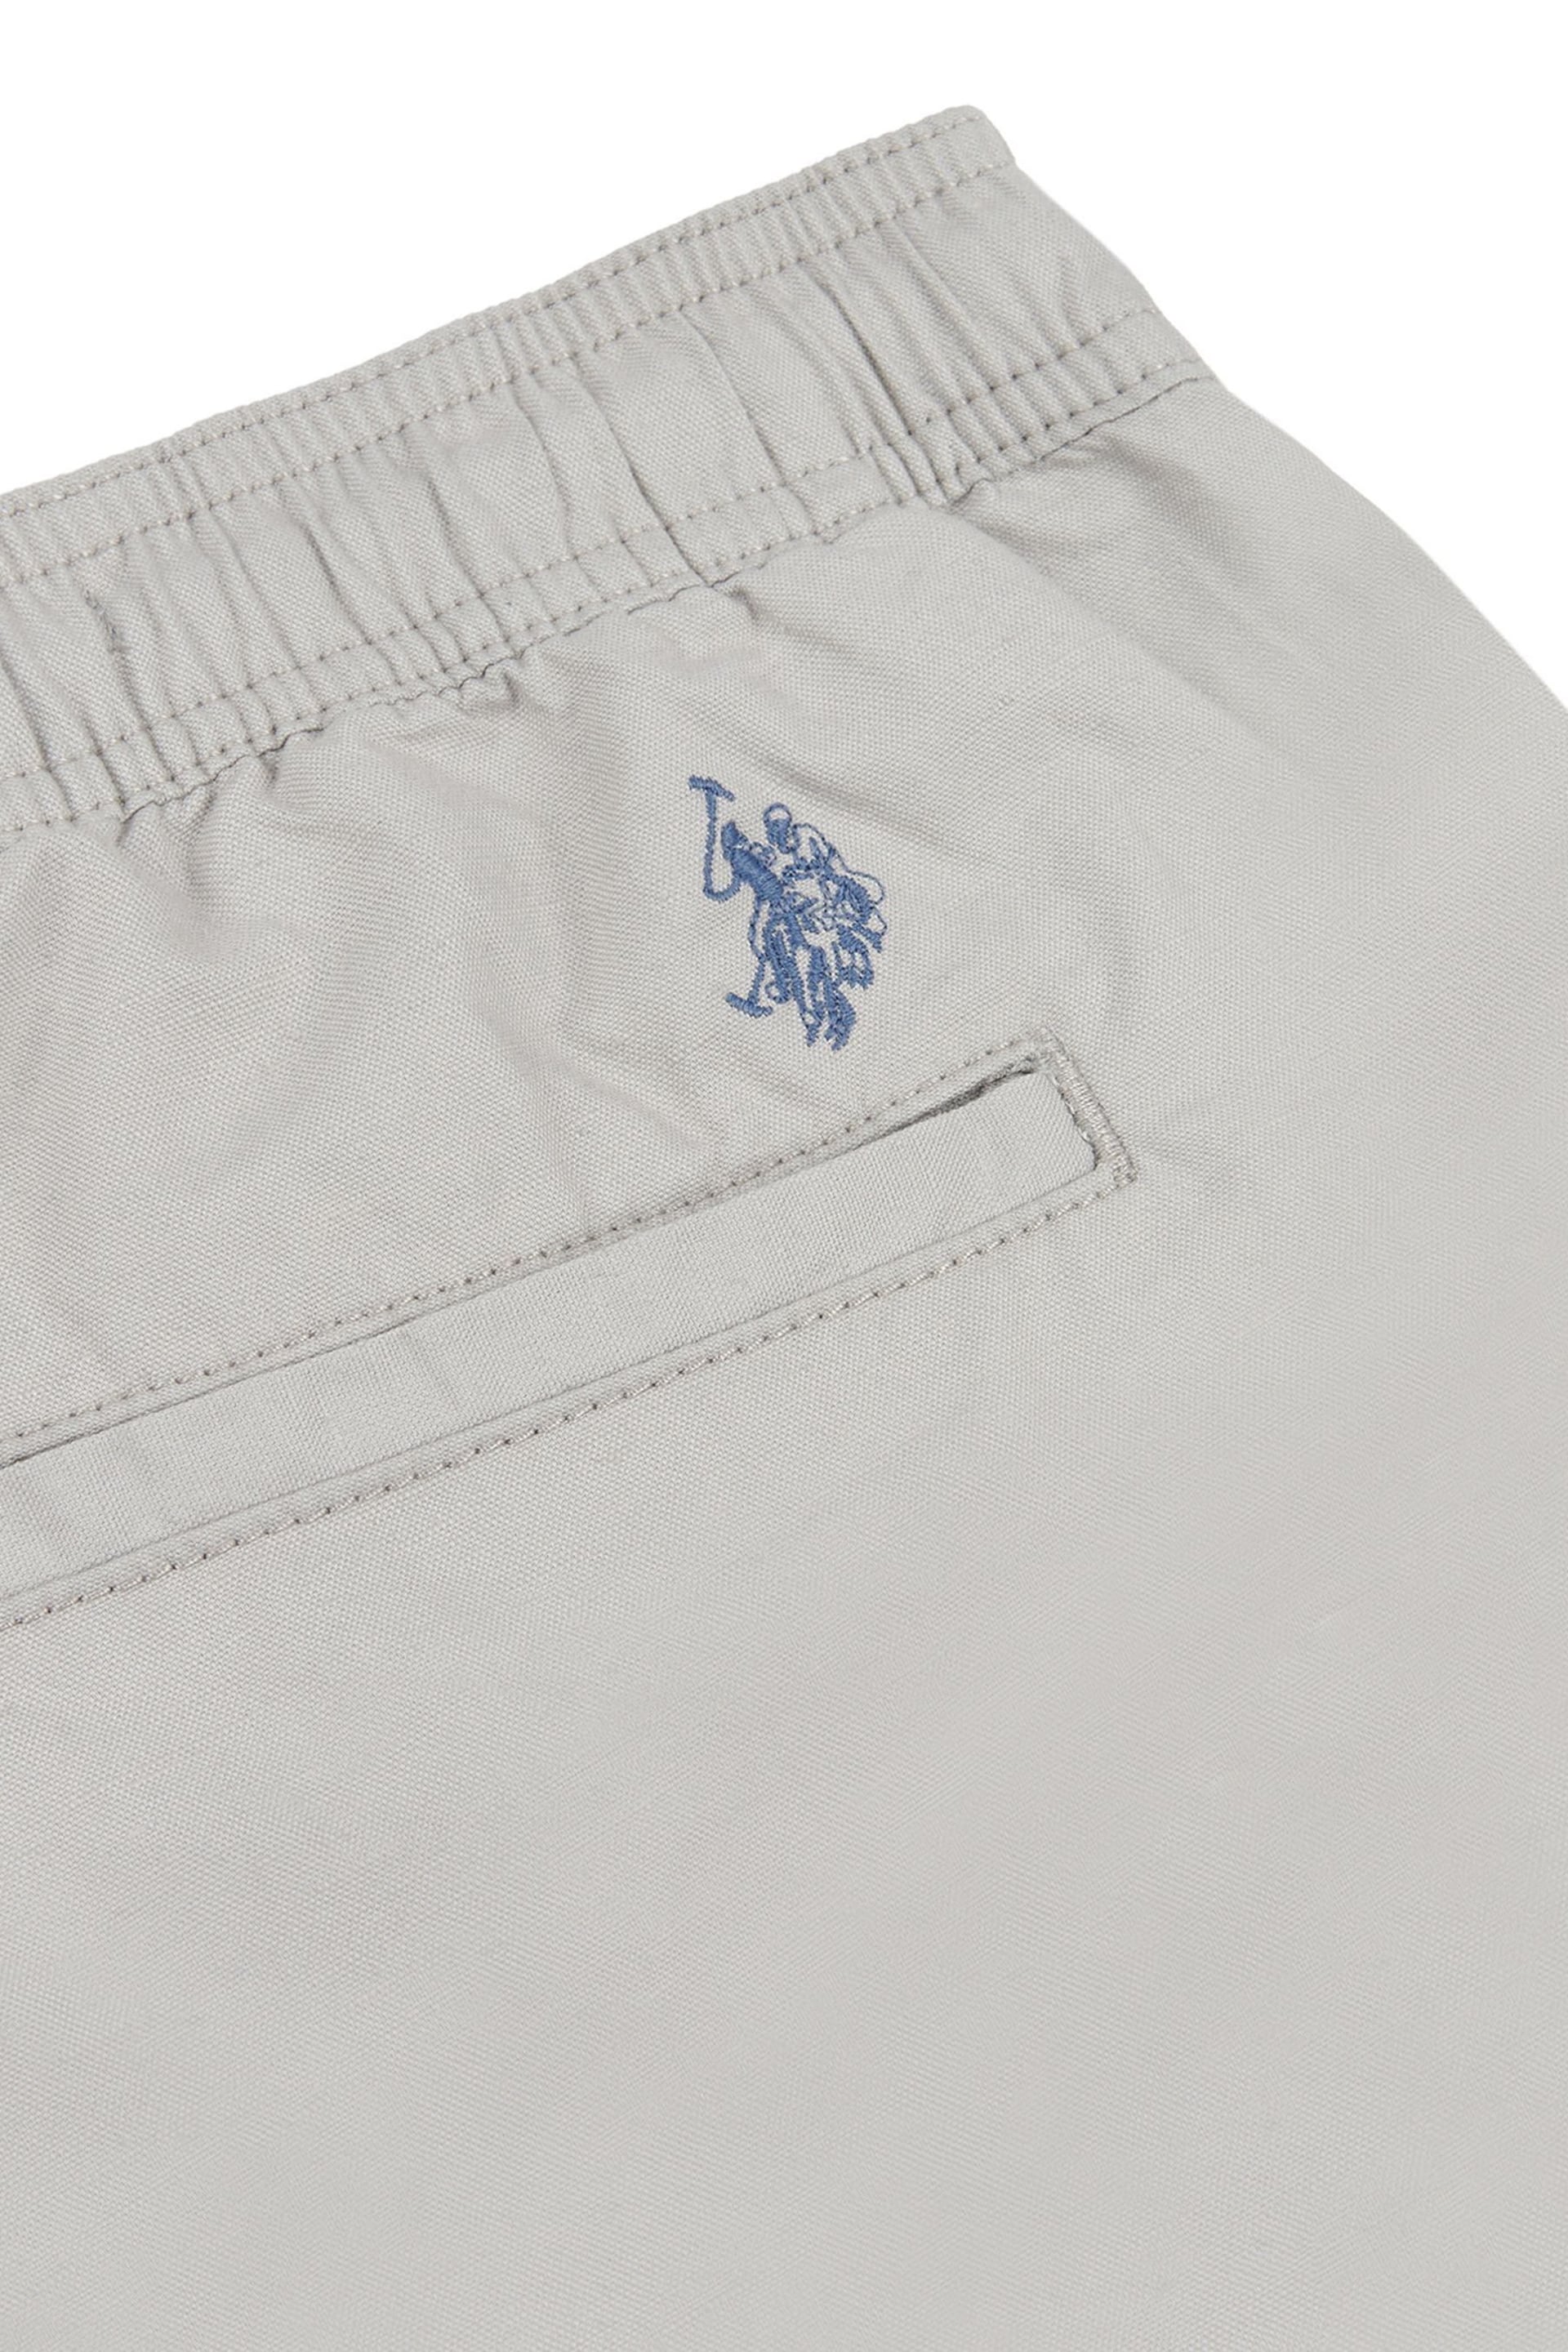 U.S. Polo Assn. Mens Grey Linen Blend Deck Shorts - Image 6 of 6